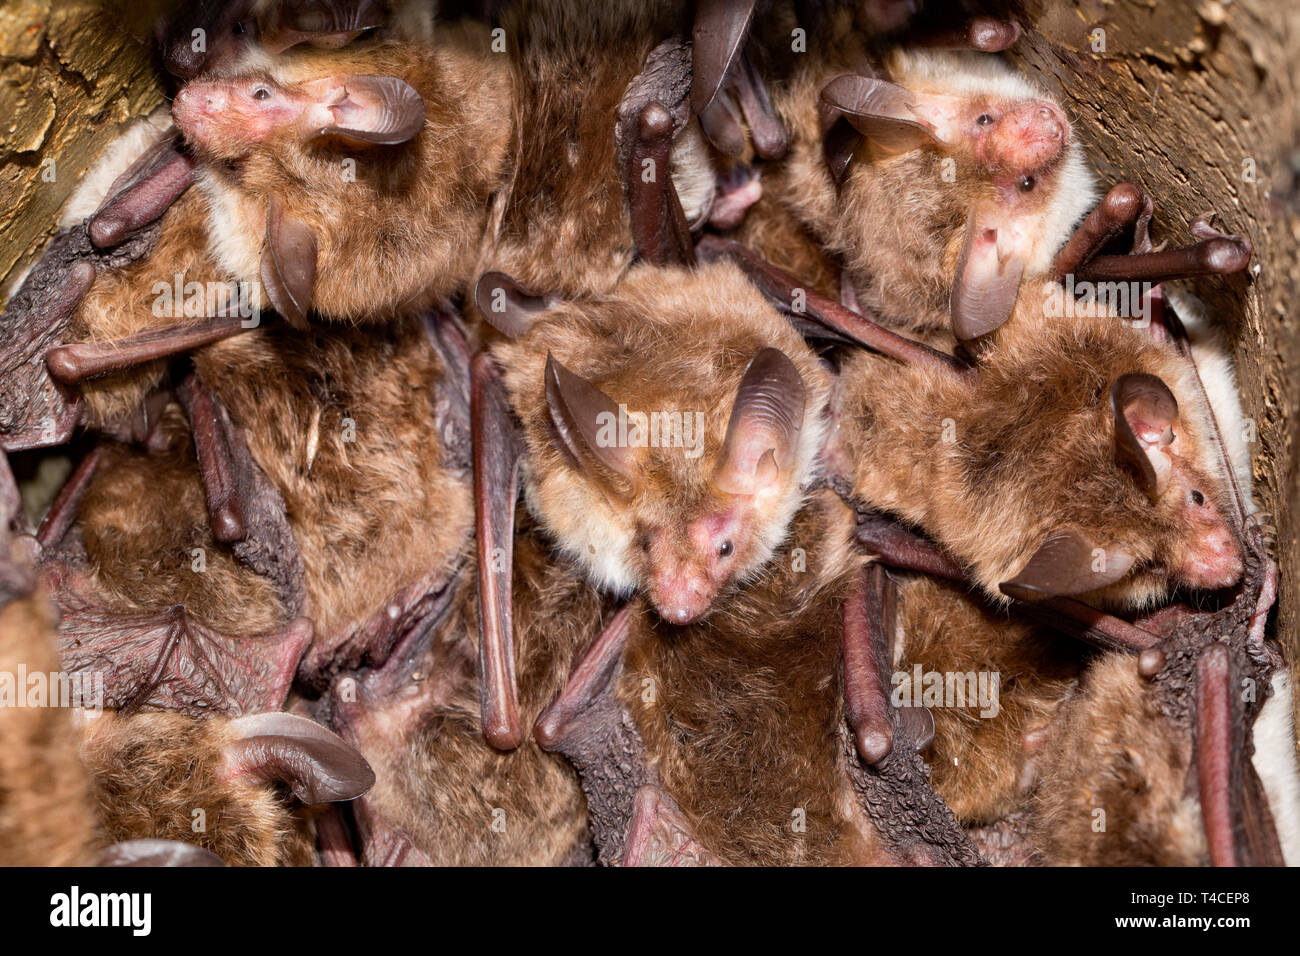 Los murciélagos de bechstein, caja de anidación de aves, (Myotis bechsteinii) Foto de stock